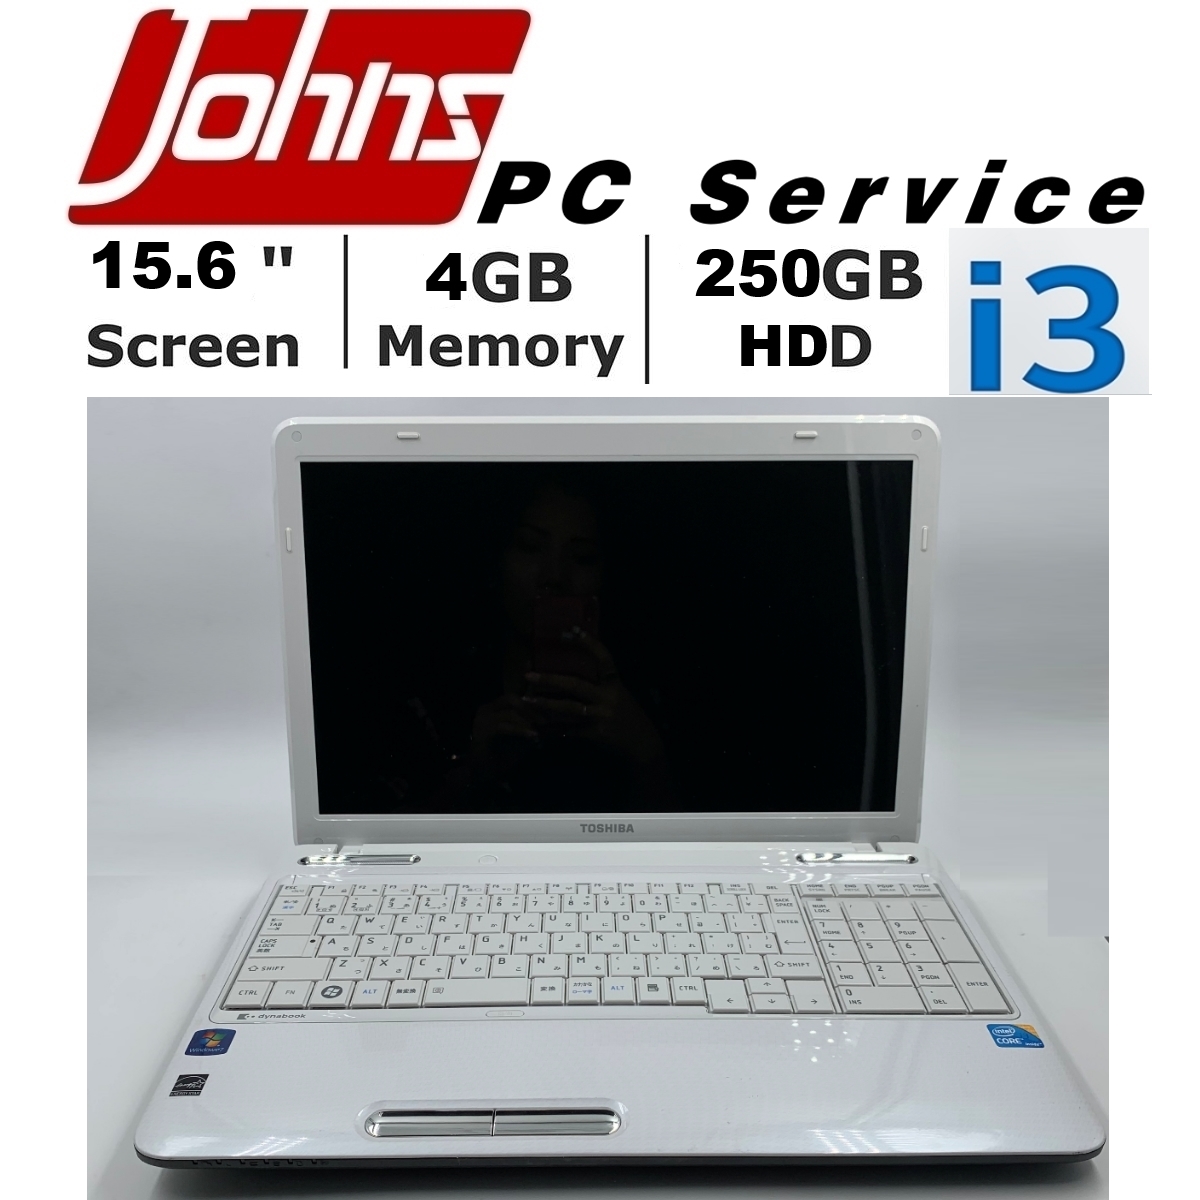 โน๊ตบุ๊คมือสอง Toshiba L650 i3/i5 15.6นิ้ว Notebook ราคาถูกๆ โน๊ตบุ๊ค laptop มือสอง โน็ตบุ๊คมือ2 โน้ตบุ๊คถูกๆ โน๊ตบุ๊คมือสอง2